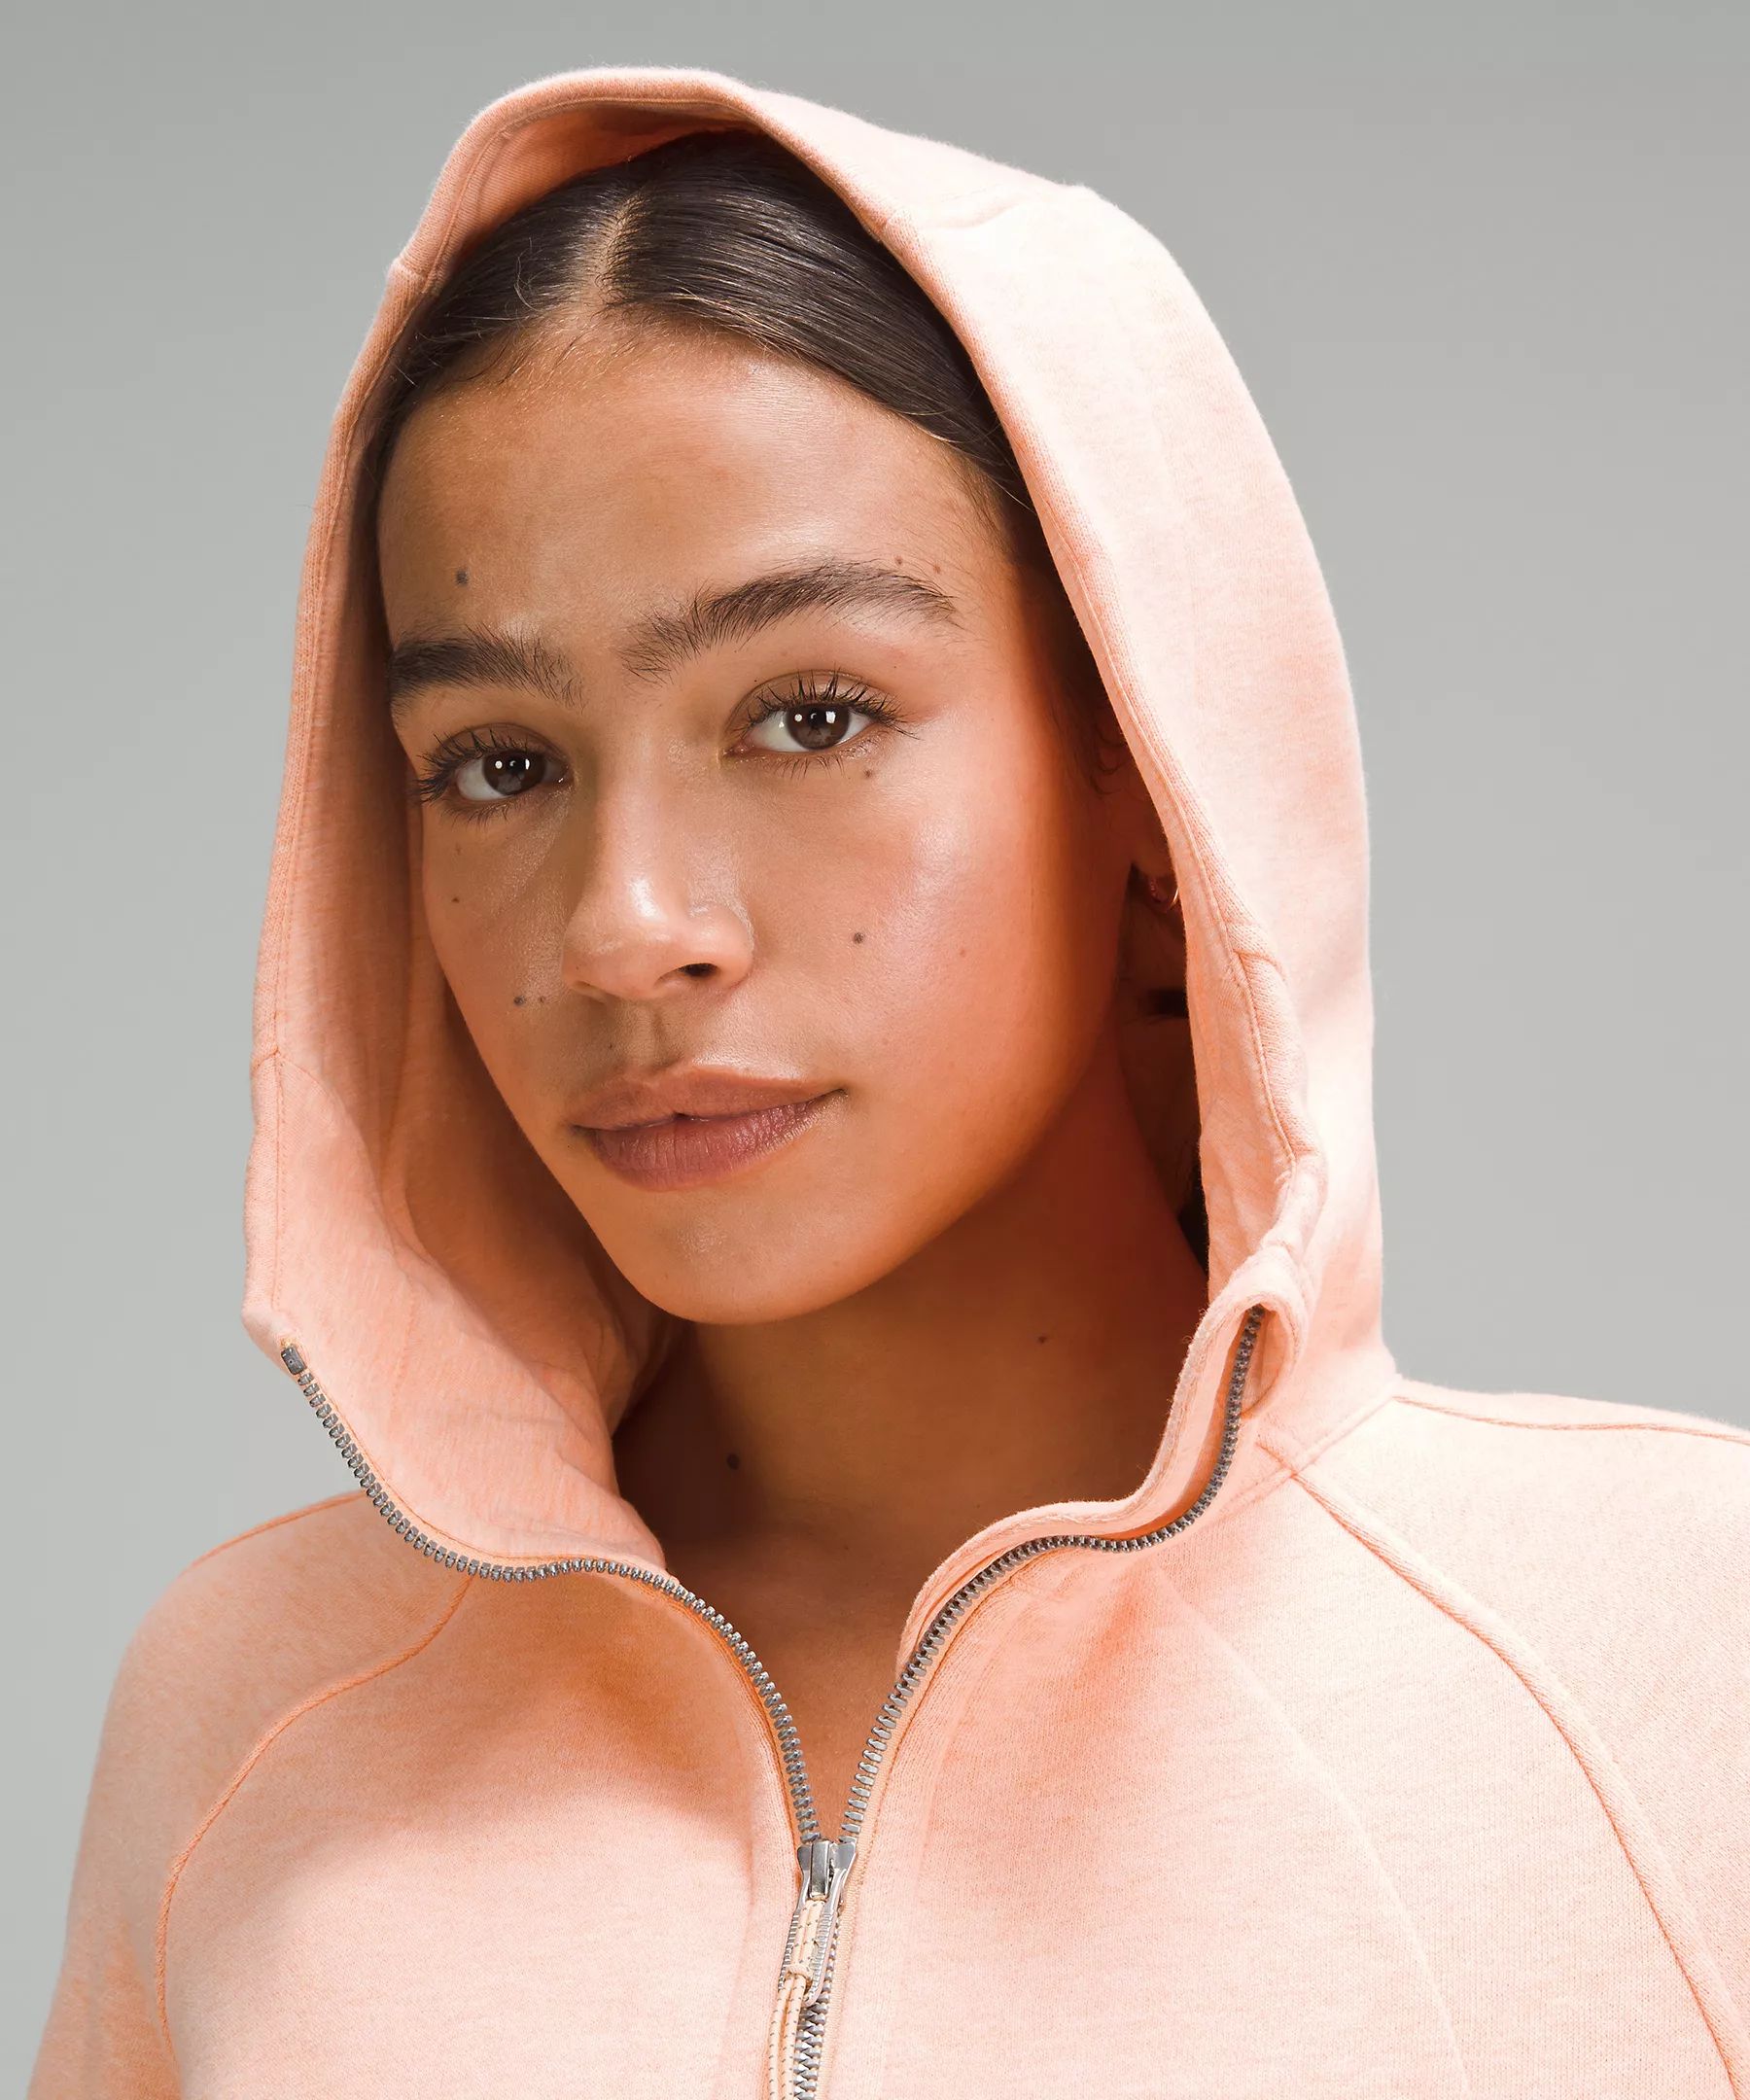 Scuba Full-Zip Cropped Hoodie | Women's Hoodies & Sweatshirts | lululemon | Lululemon (US)